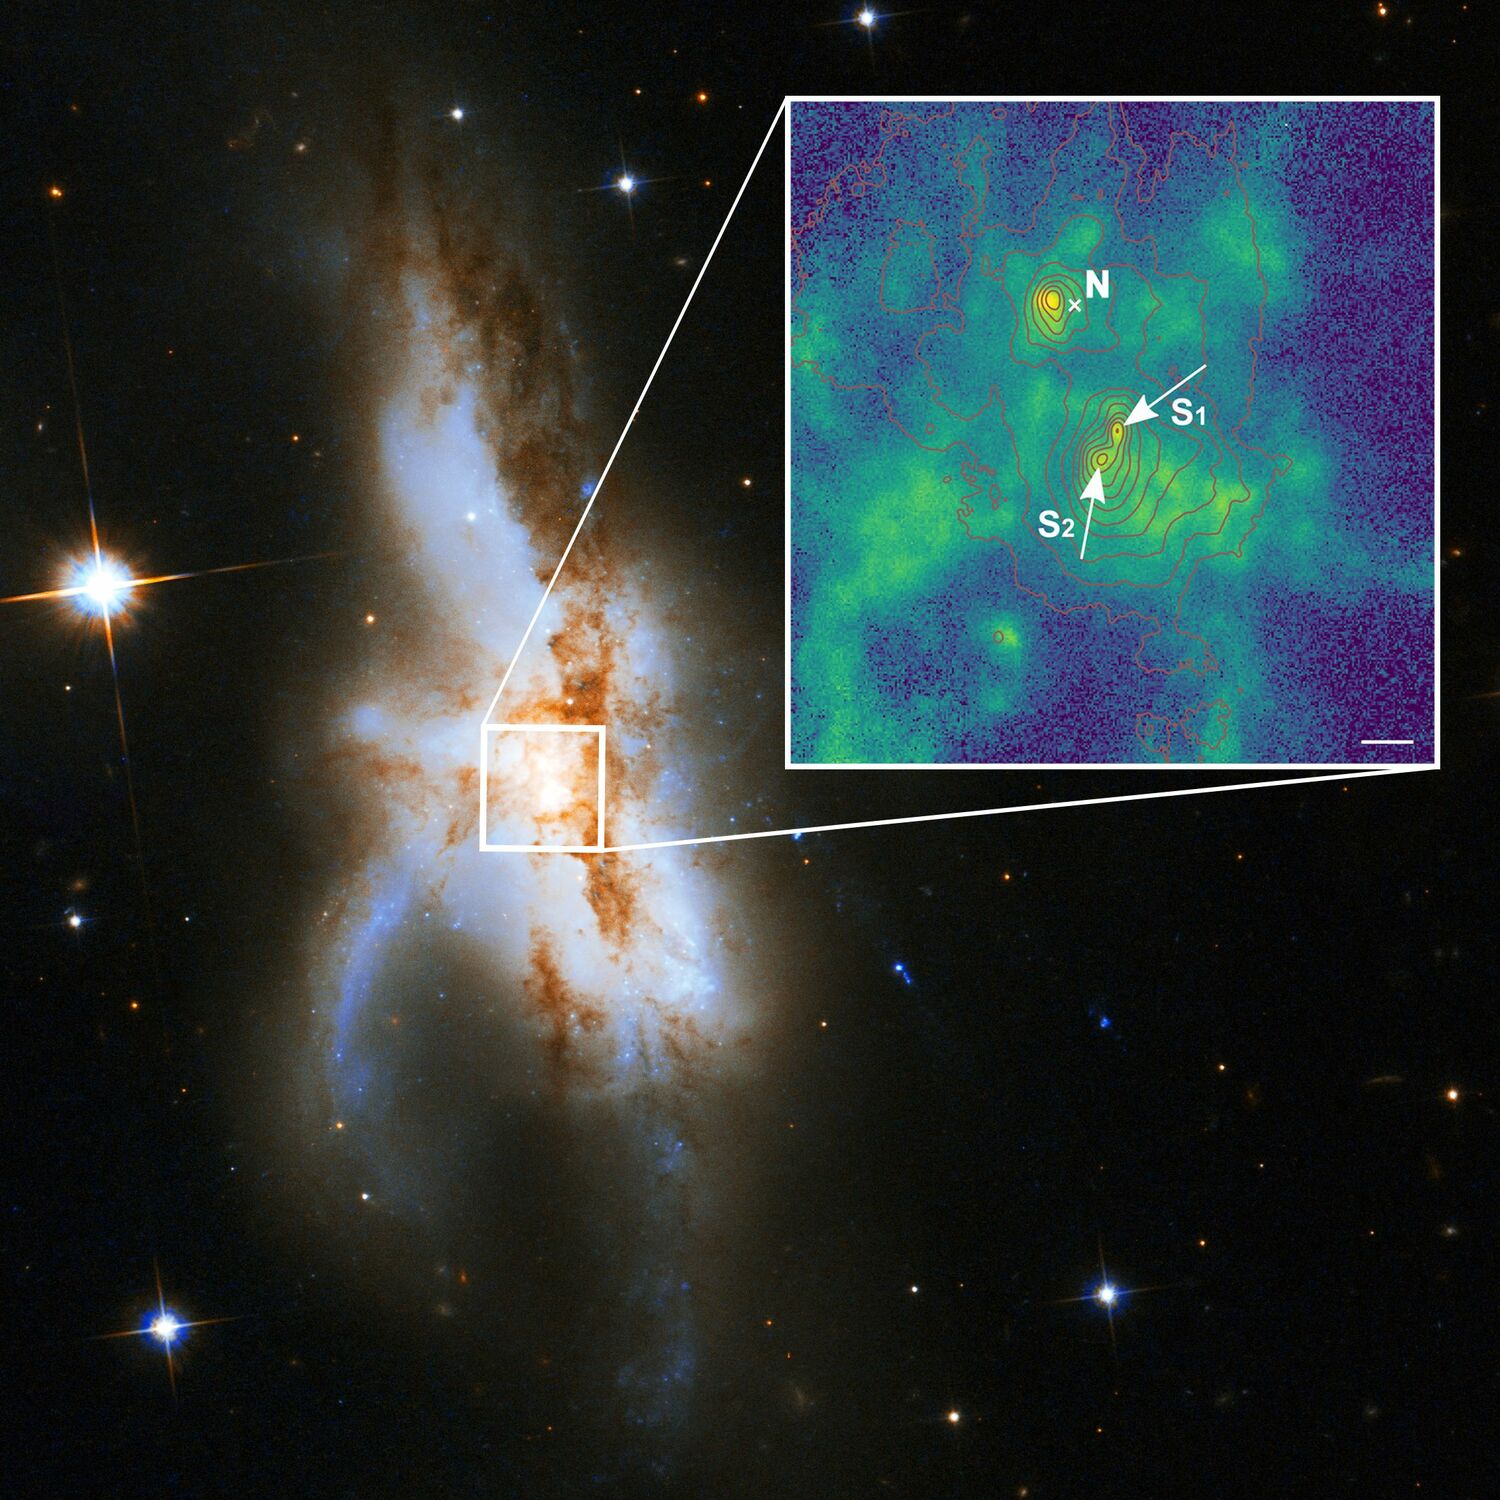 Die irreguläre Galaxie NGC 6240. Neue Beobachtungen zeigen, dass sie nicht zwei, sondern drei supermassereiche Schwarze Löcher in ihrem Kern beherbergt. Das nördliche Schwarze Loch (N) ist aktiv und war zuvor bekannt. Das vergrößerte neue Bild mit hoher räumlicher Auflösung zeigt, dass die südliche Komponente aus zwei supermassereichen Schwarzen Löchern (S1 und S2) besteht. Die grüne Farbe gibt die Verteilung des Gases an, das durch die Strahlung um die Schwarzen Löcher Strahlung ionisiert wird. Die roten Linien zeigen die Konturen des Sternenlichts aus der Galaxie und die Länge des weißen Balkens entspricht 1000 Lichtjahren.